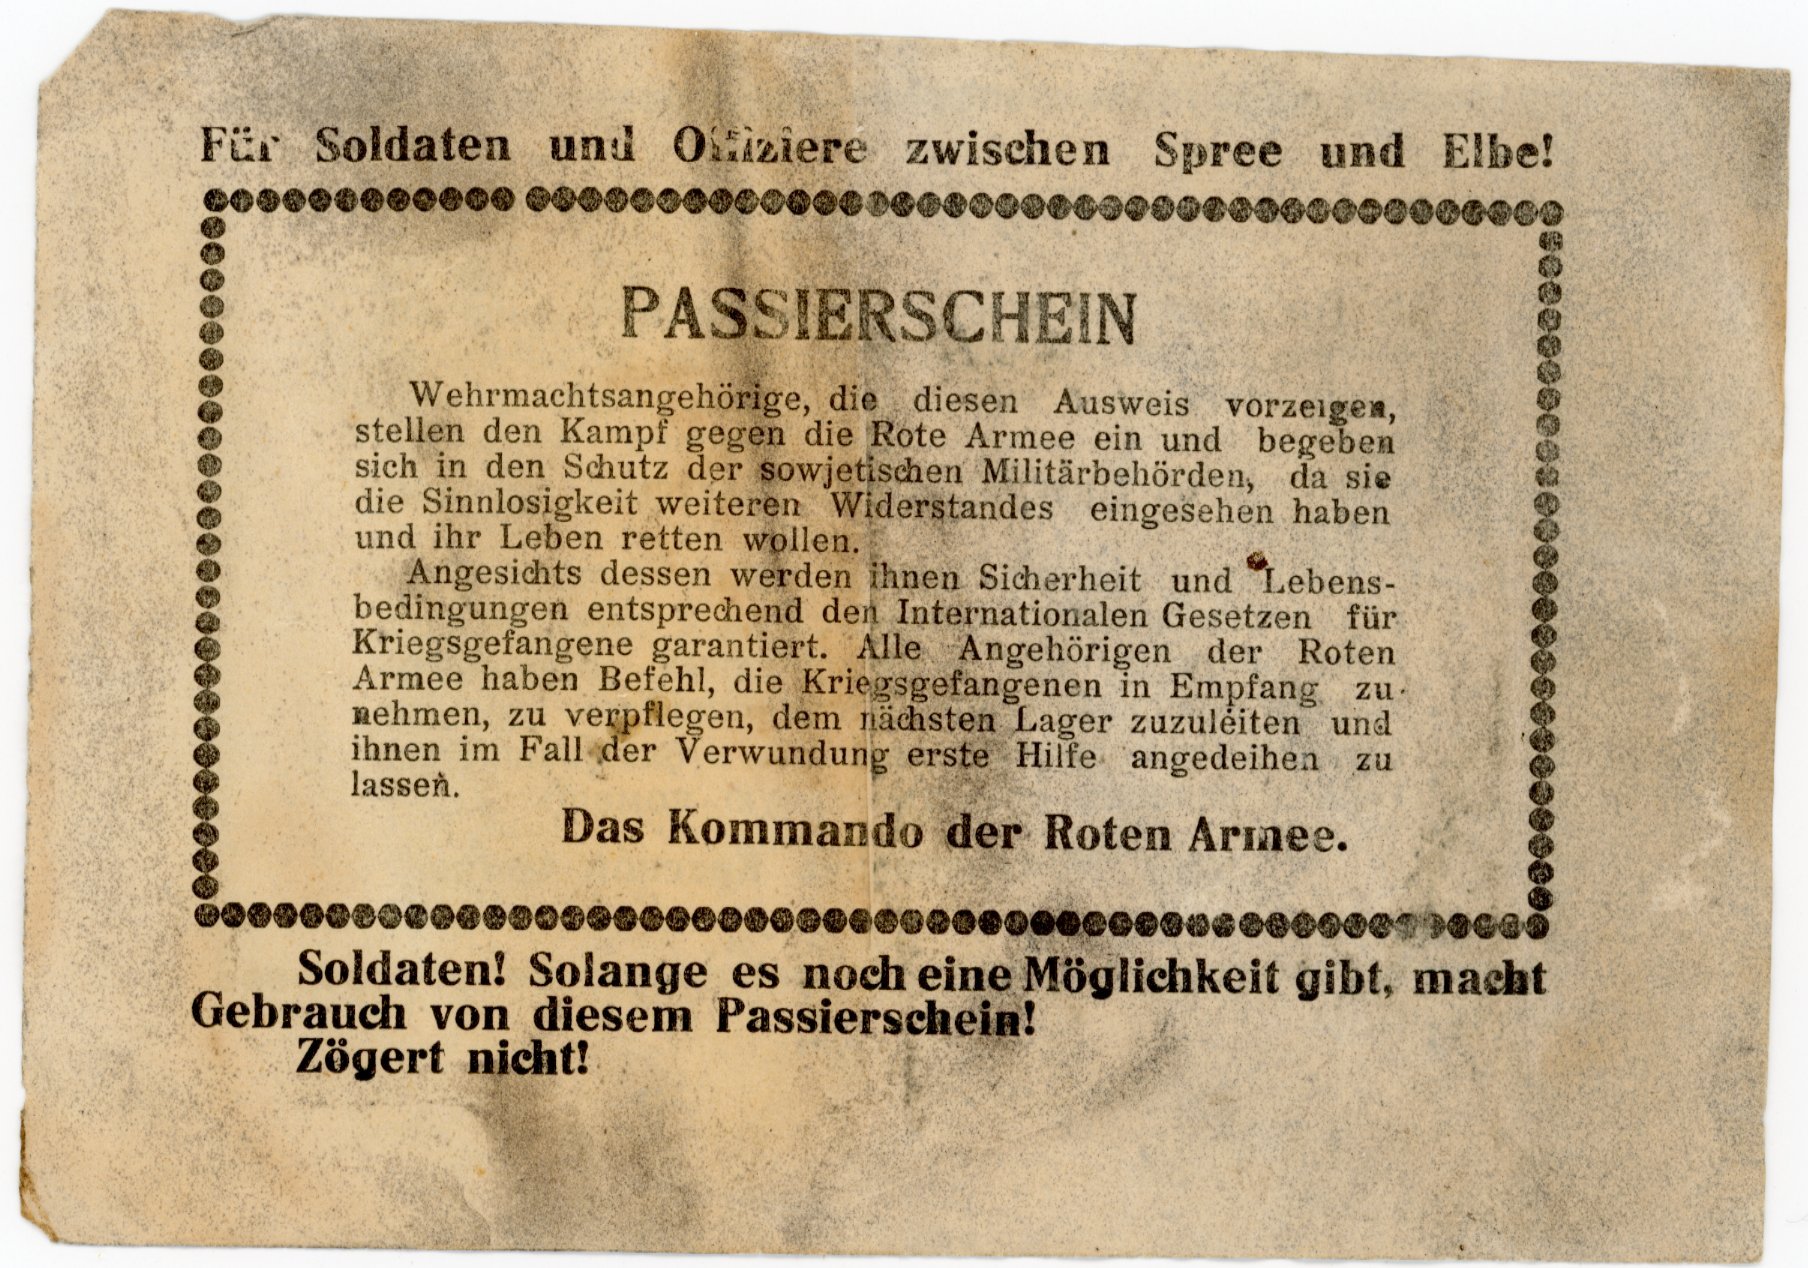 Passierschein für Soldaten zwischen Spree und Elbe (Museum Berlin-Karlshorst CC BY-NC-SA)